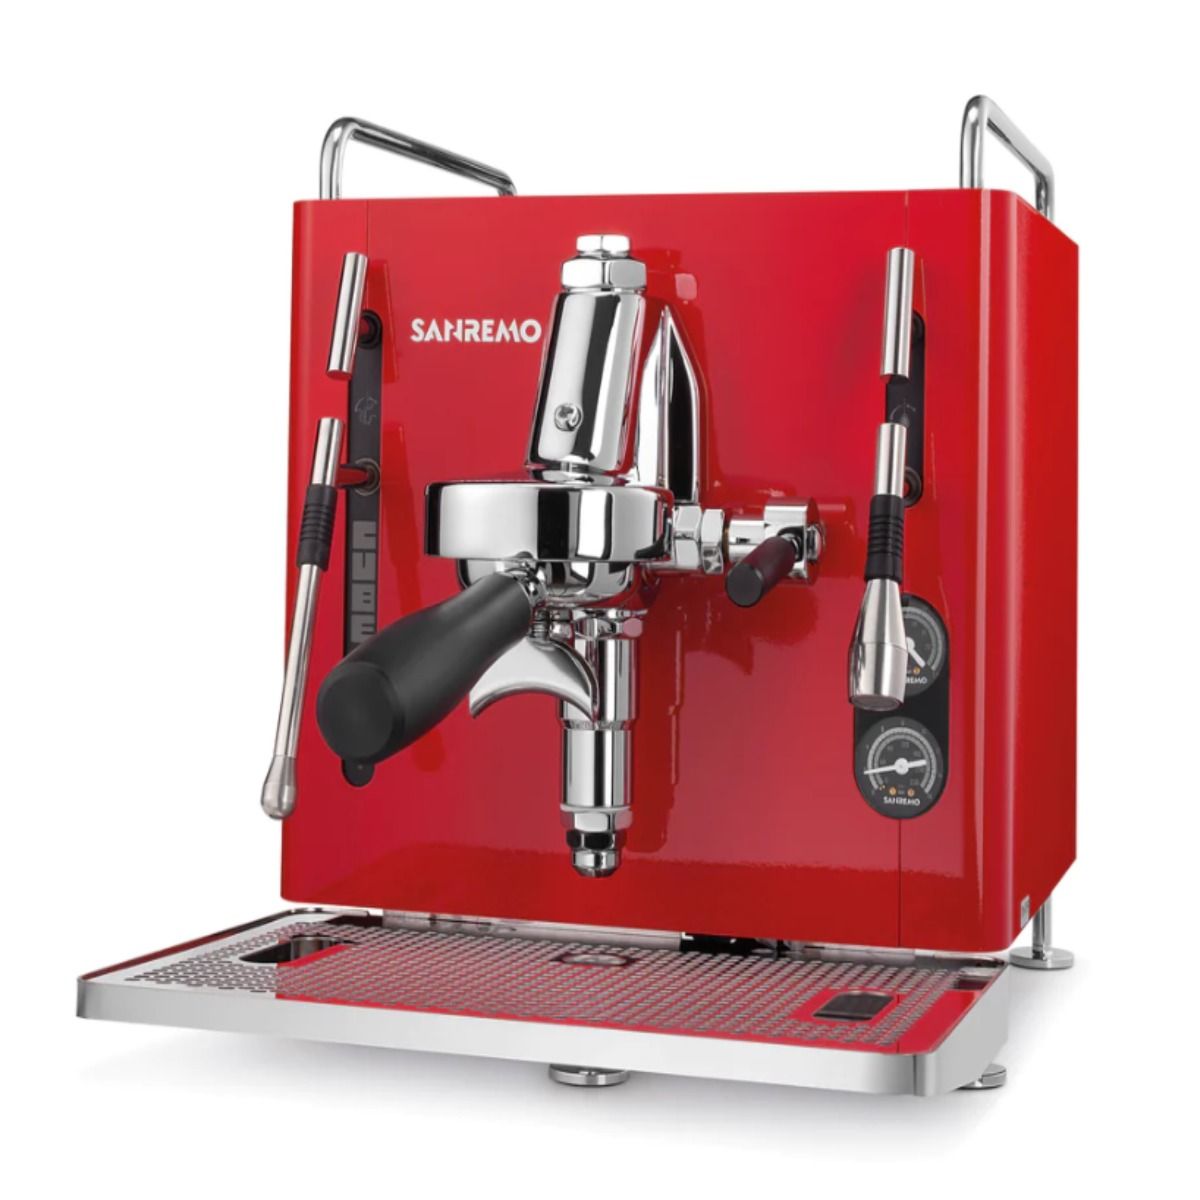 Sanremo Cube R Model A Espresso Machine